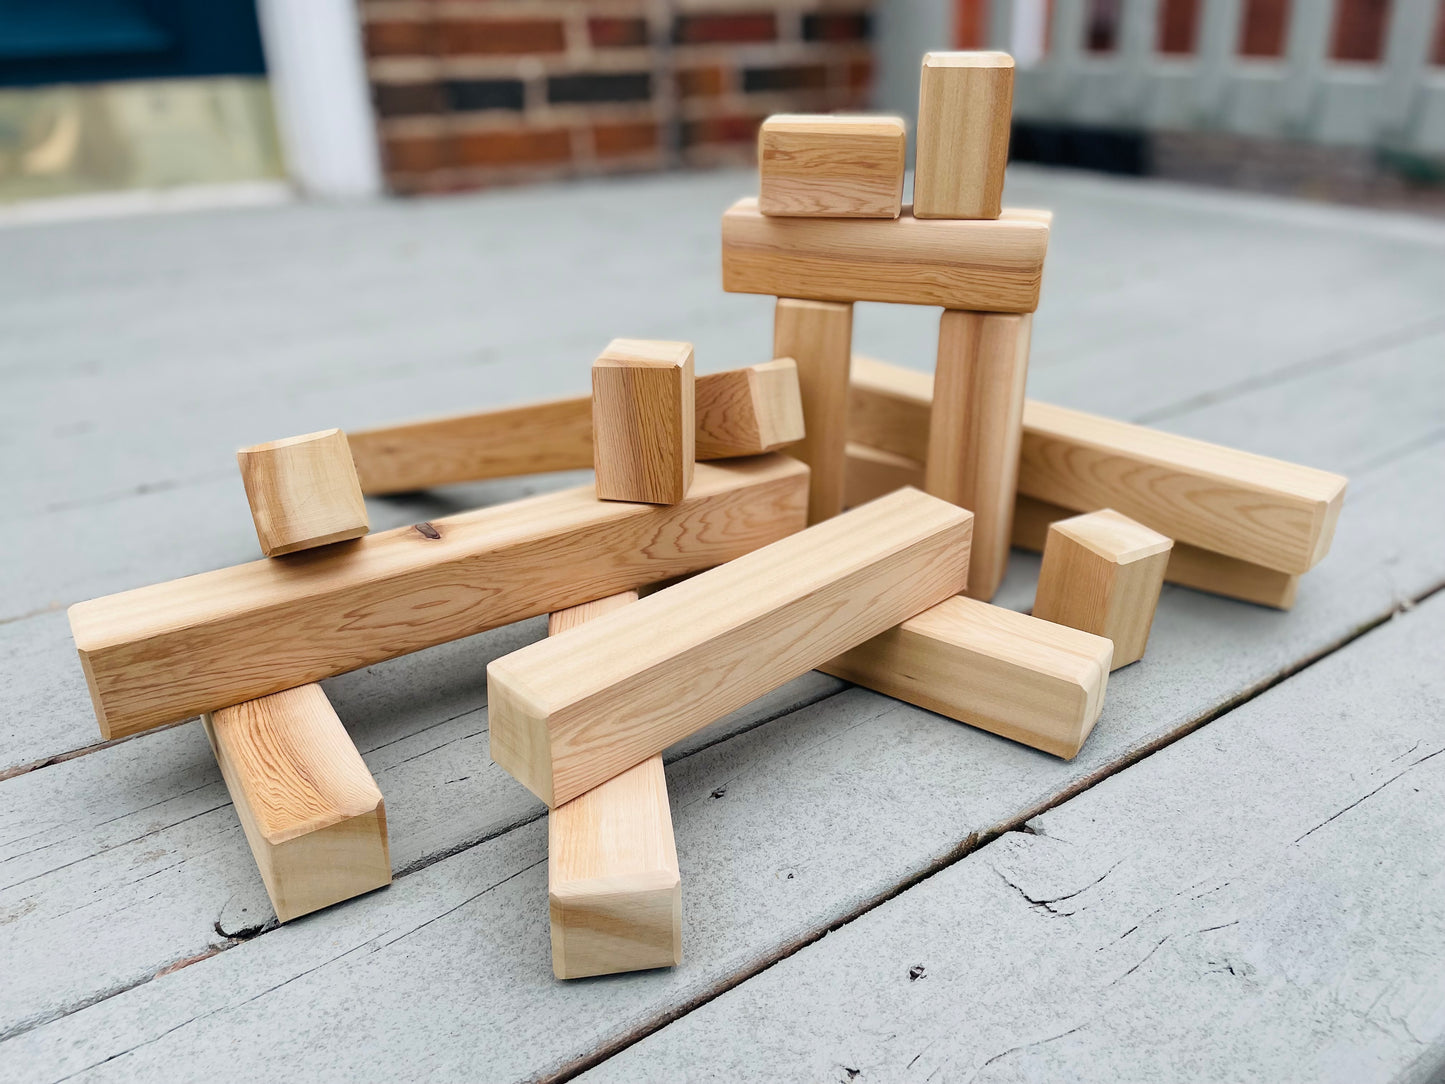 16 Piece Cedar Blocks - Outdoor Blocks Made in Canada